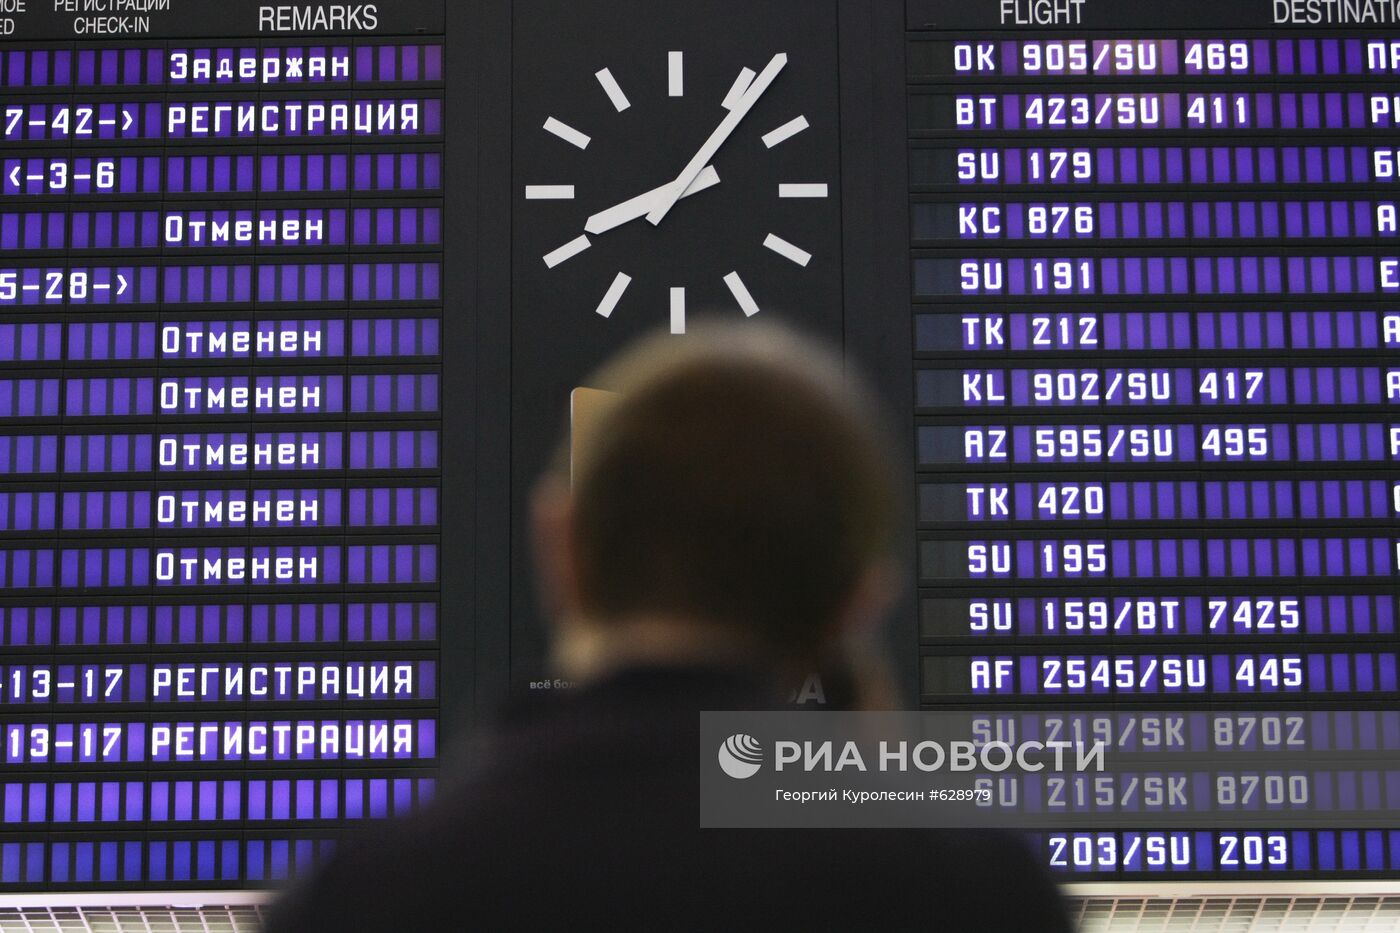 Информационное табло в аэропорту "Шереметьево"